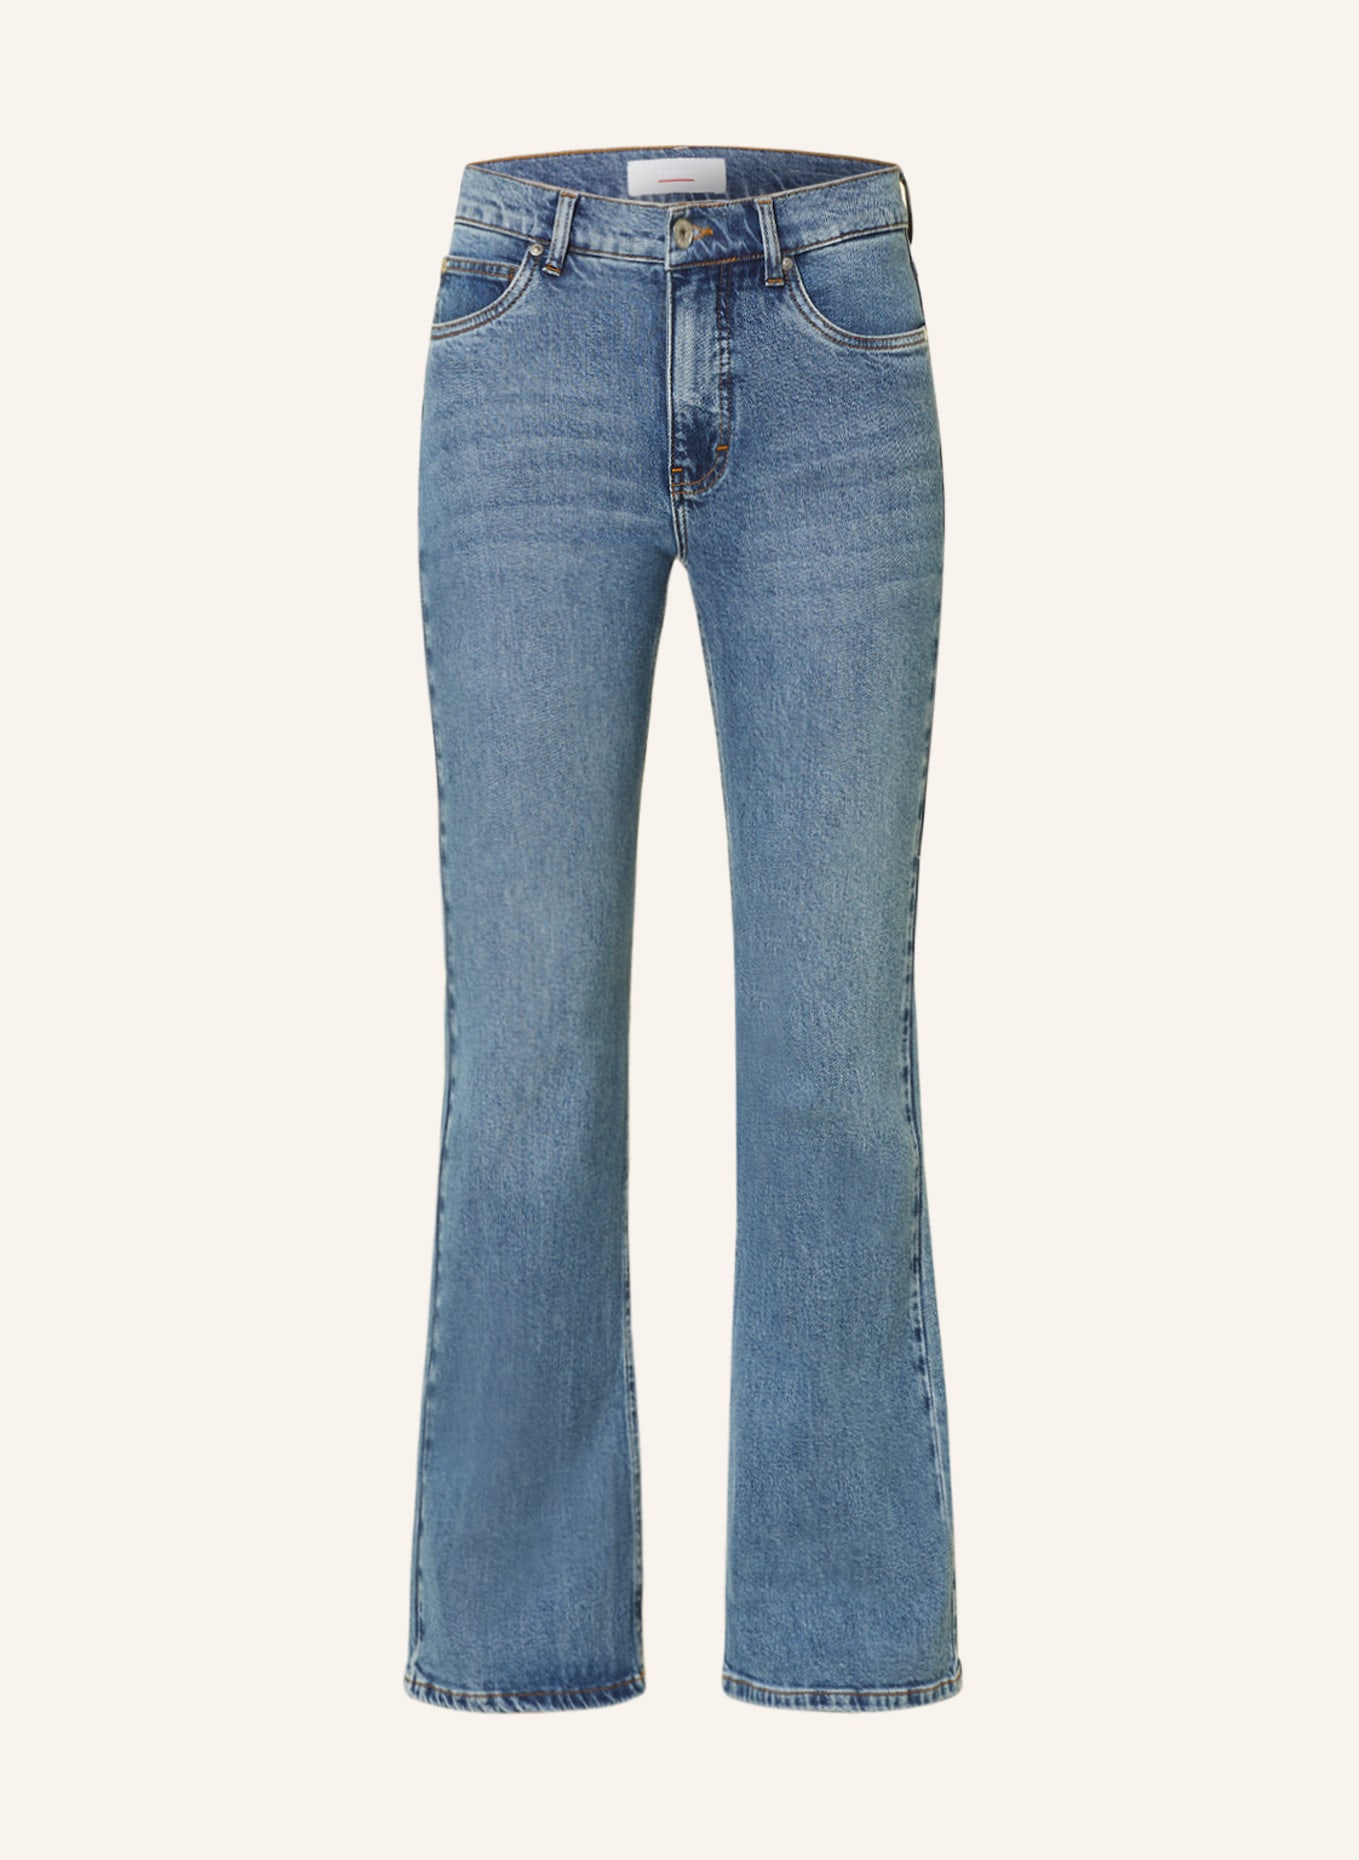 CINQUE Flared Jeans, Farbe: 64 BLAU (Bild 1)